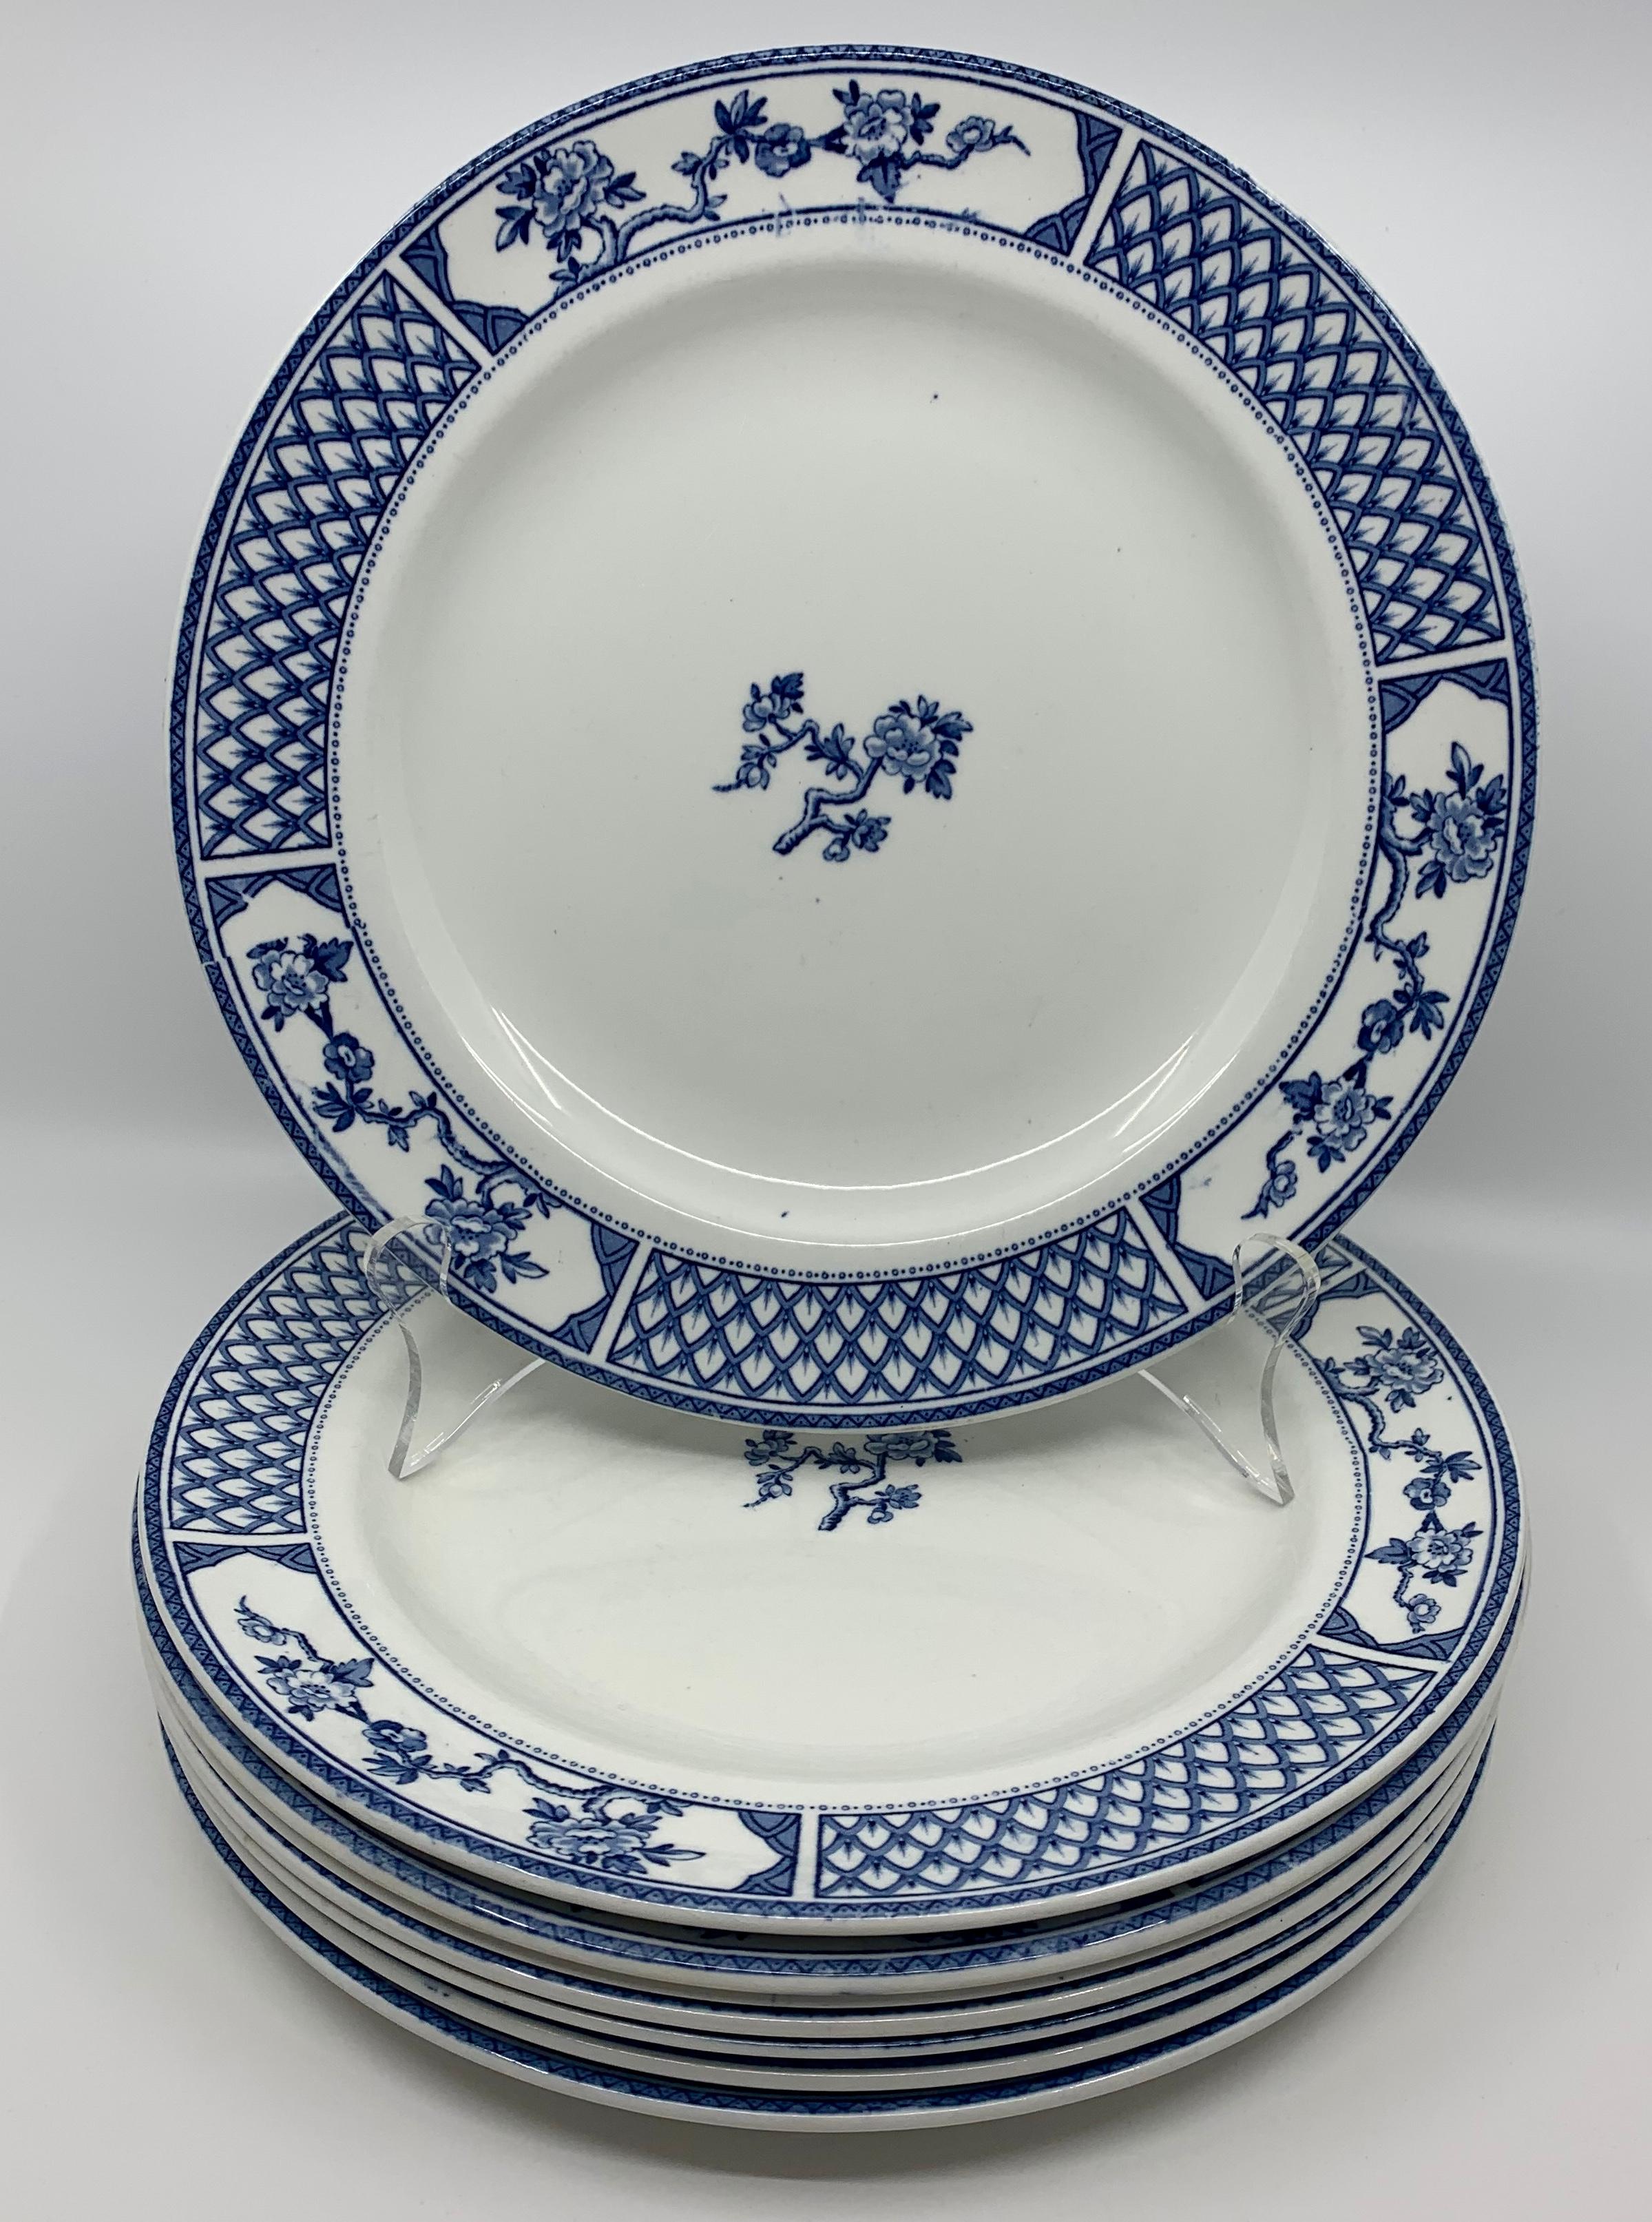 Ensemble de huit assiettes Exeter bleu et blanc. Huit assiettes anglaises blanches avec bordure en treillis bleu entre des réserves florales centrées sur une branche de cerisier en fleurs. Des assiettes classiques et élégantes en bleu et blanc.